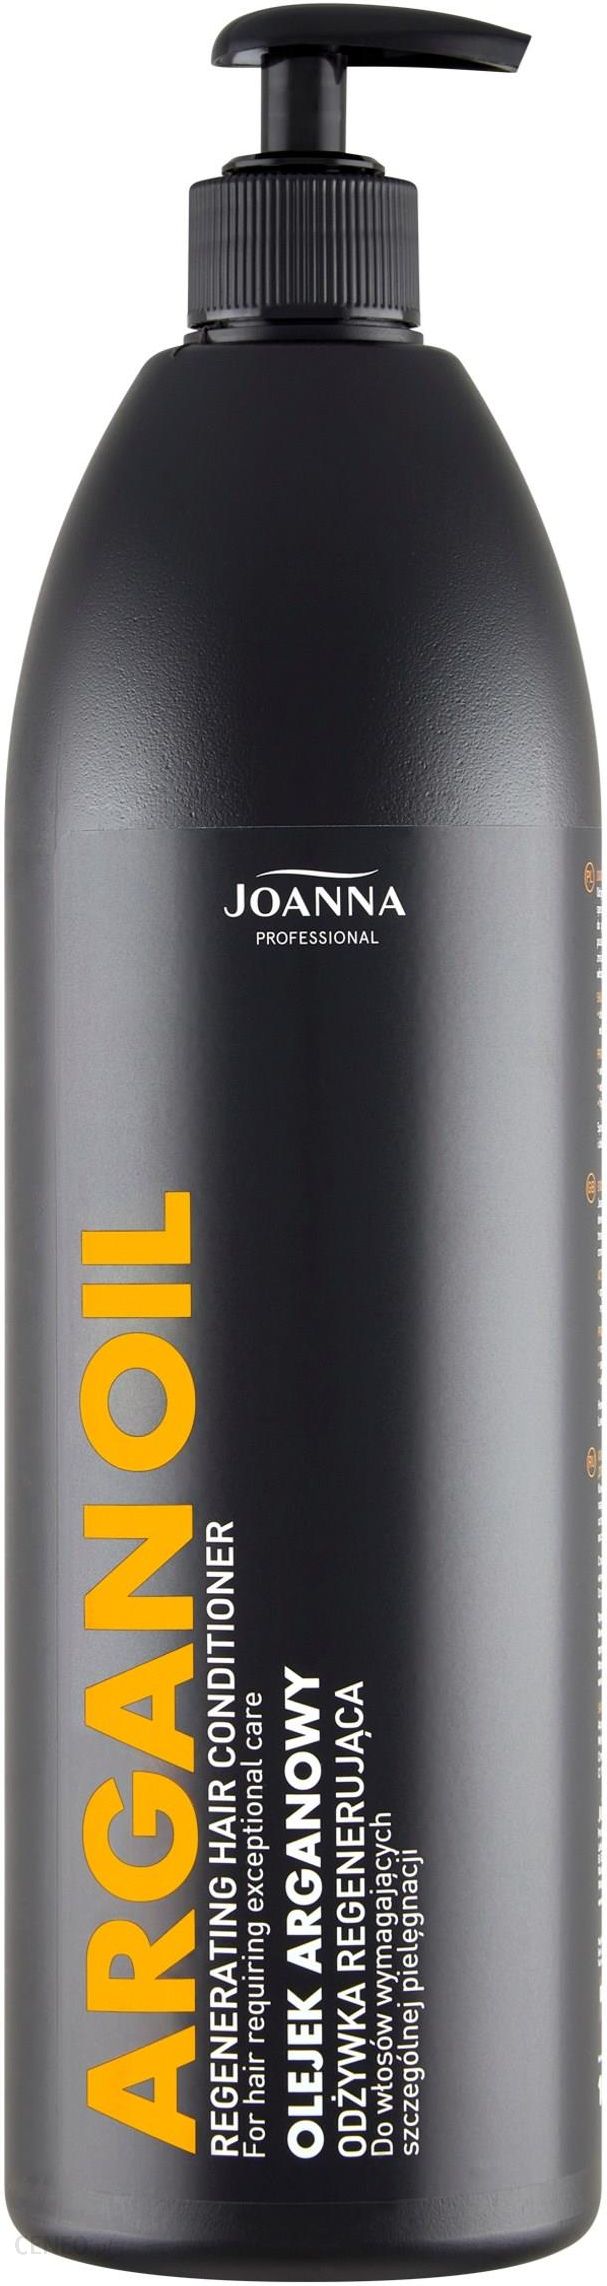 joanna professional odżywka do włosów opinie